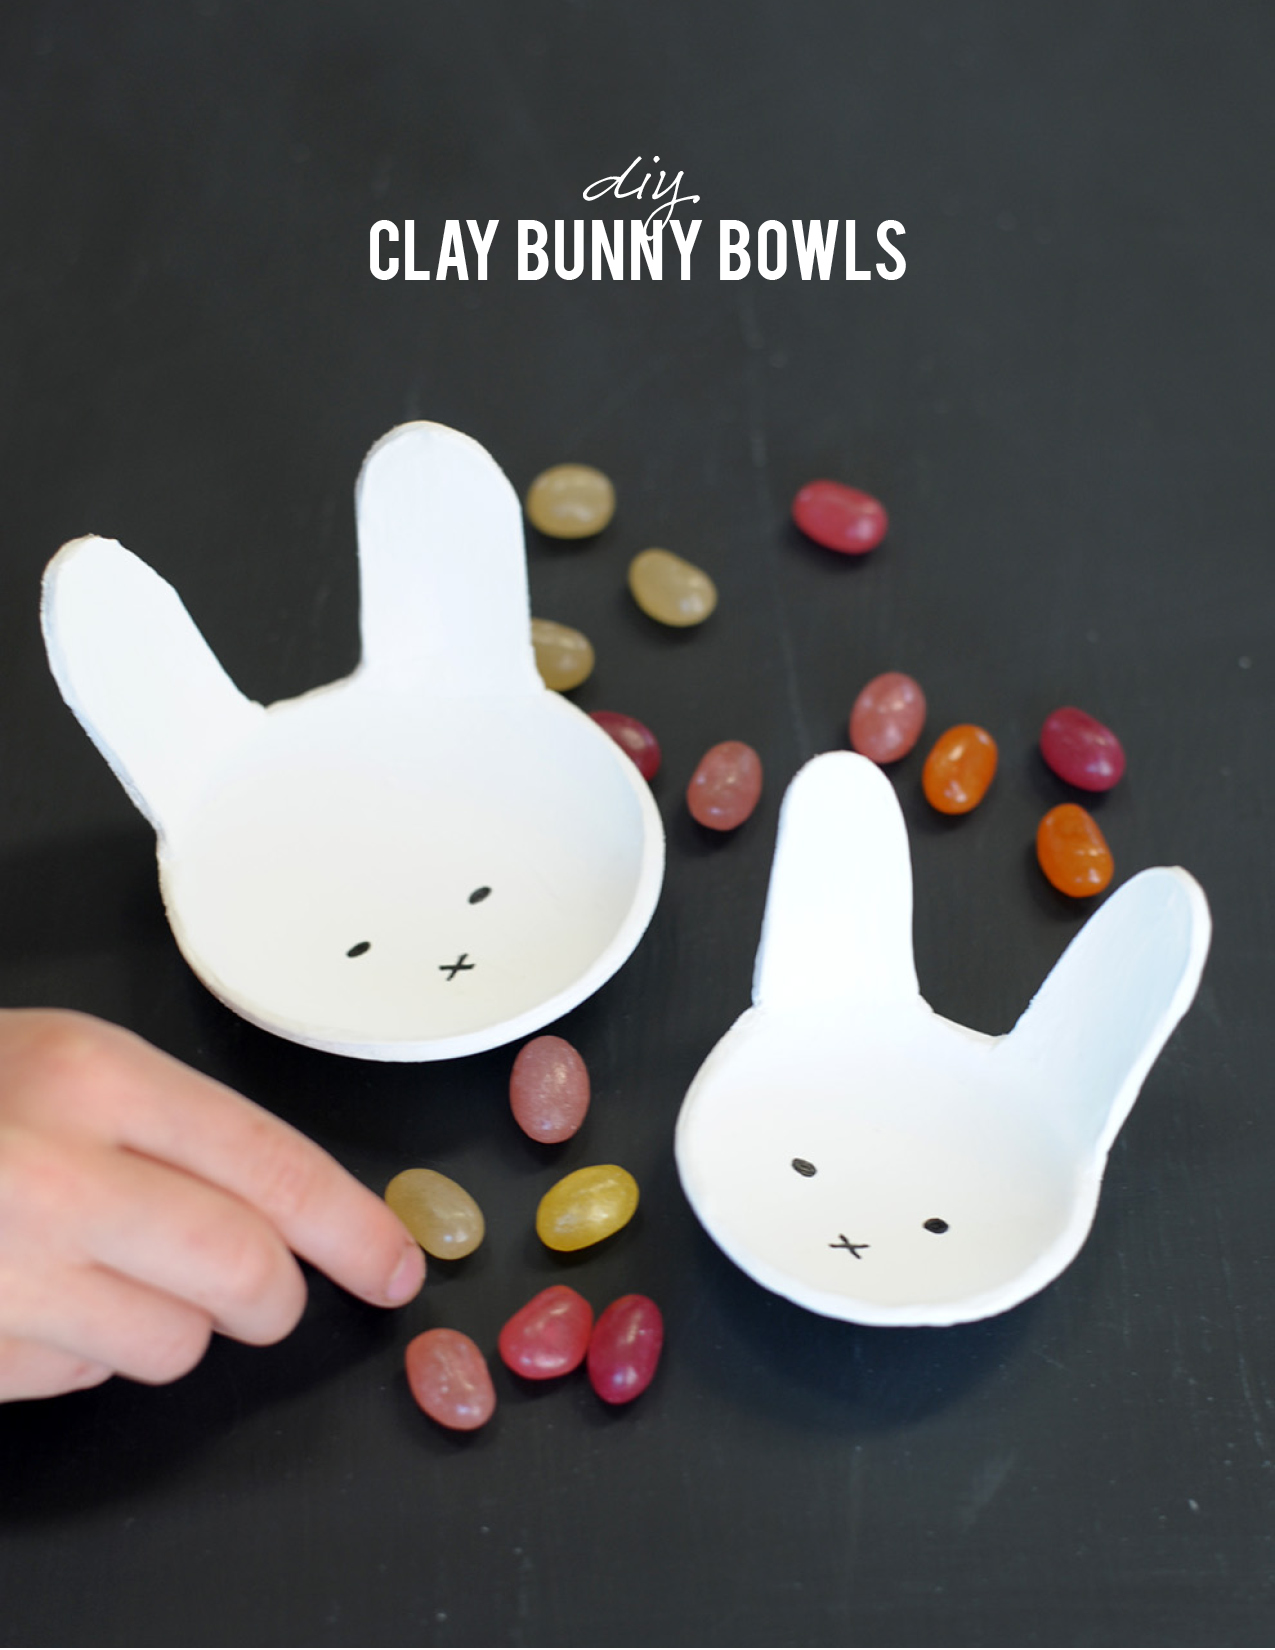 Clay bunny bowls